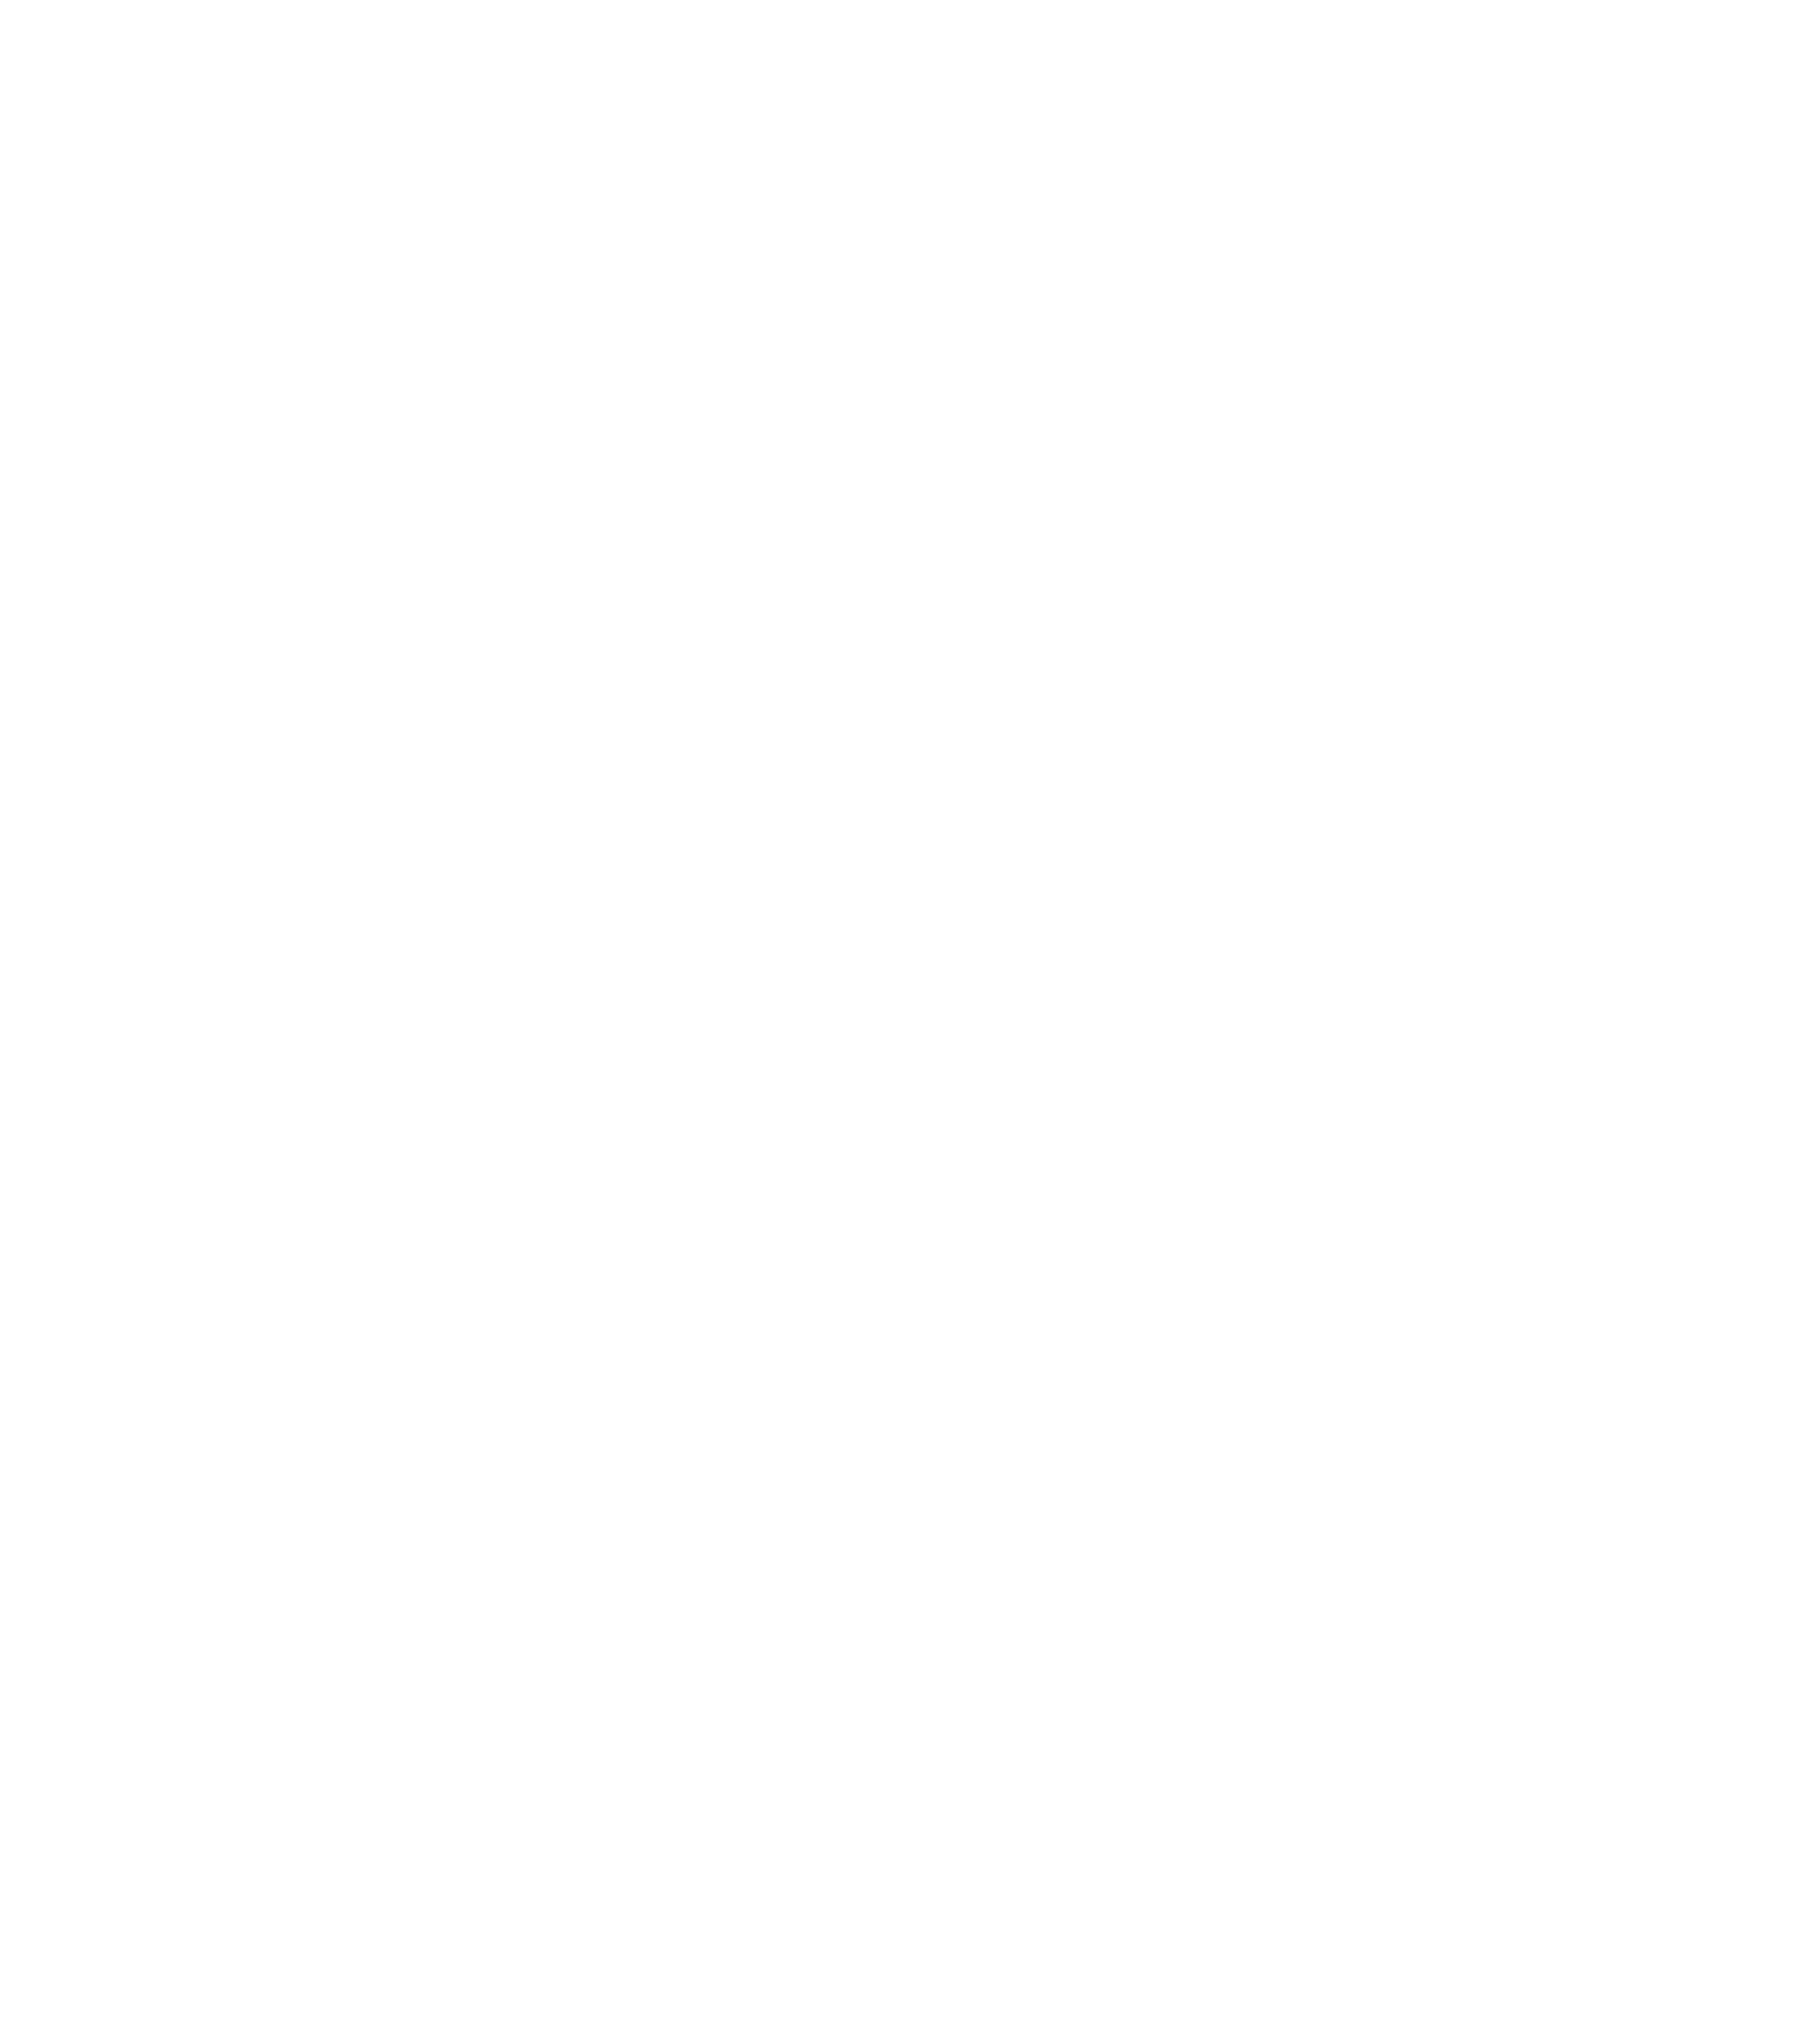 Gasterij De Commanderie